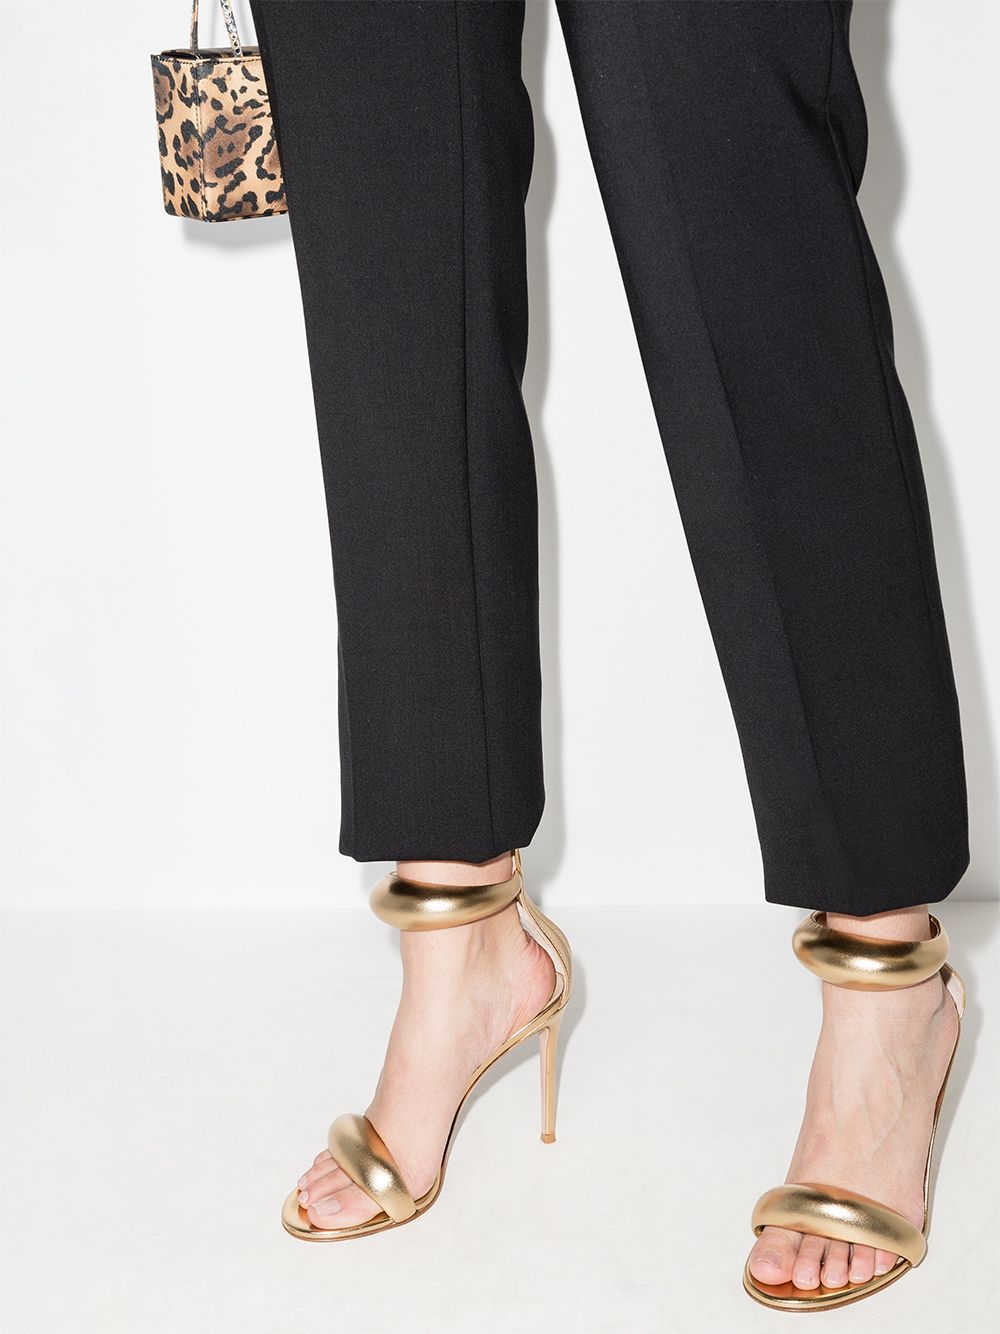 GIANVITO ROSSI Metallic Bijoux Sandals for Women